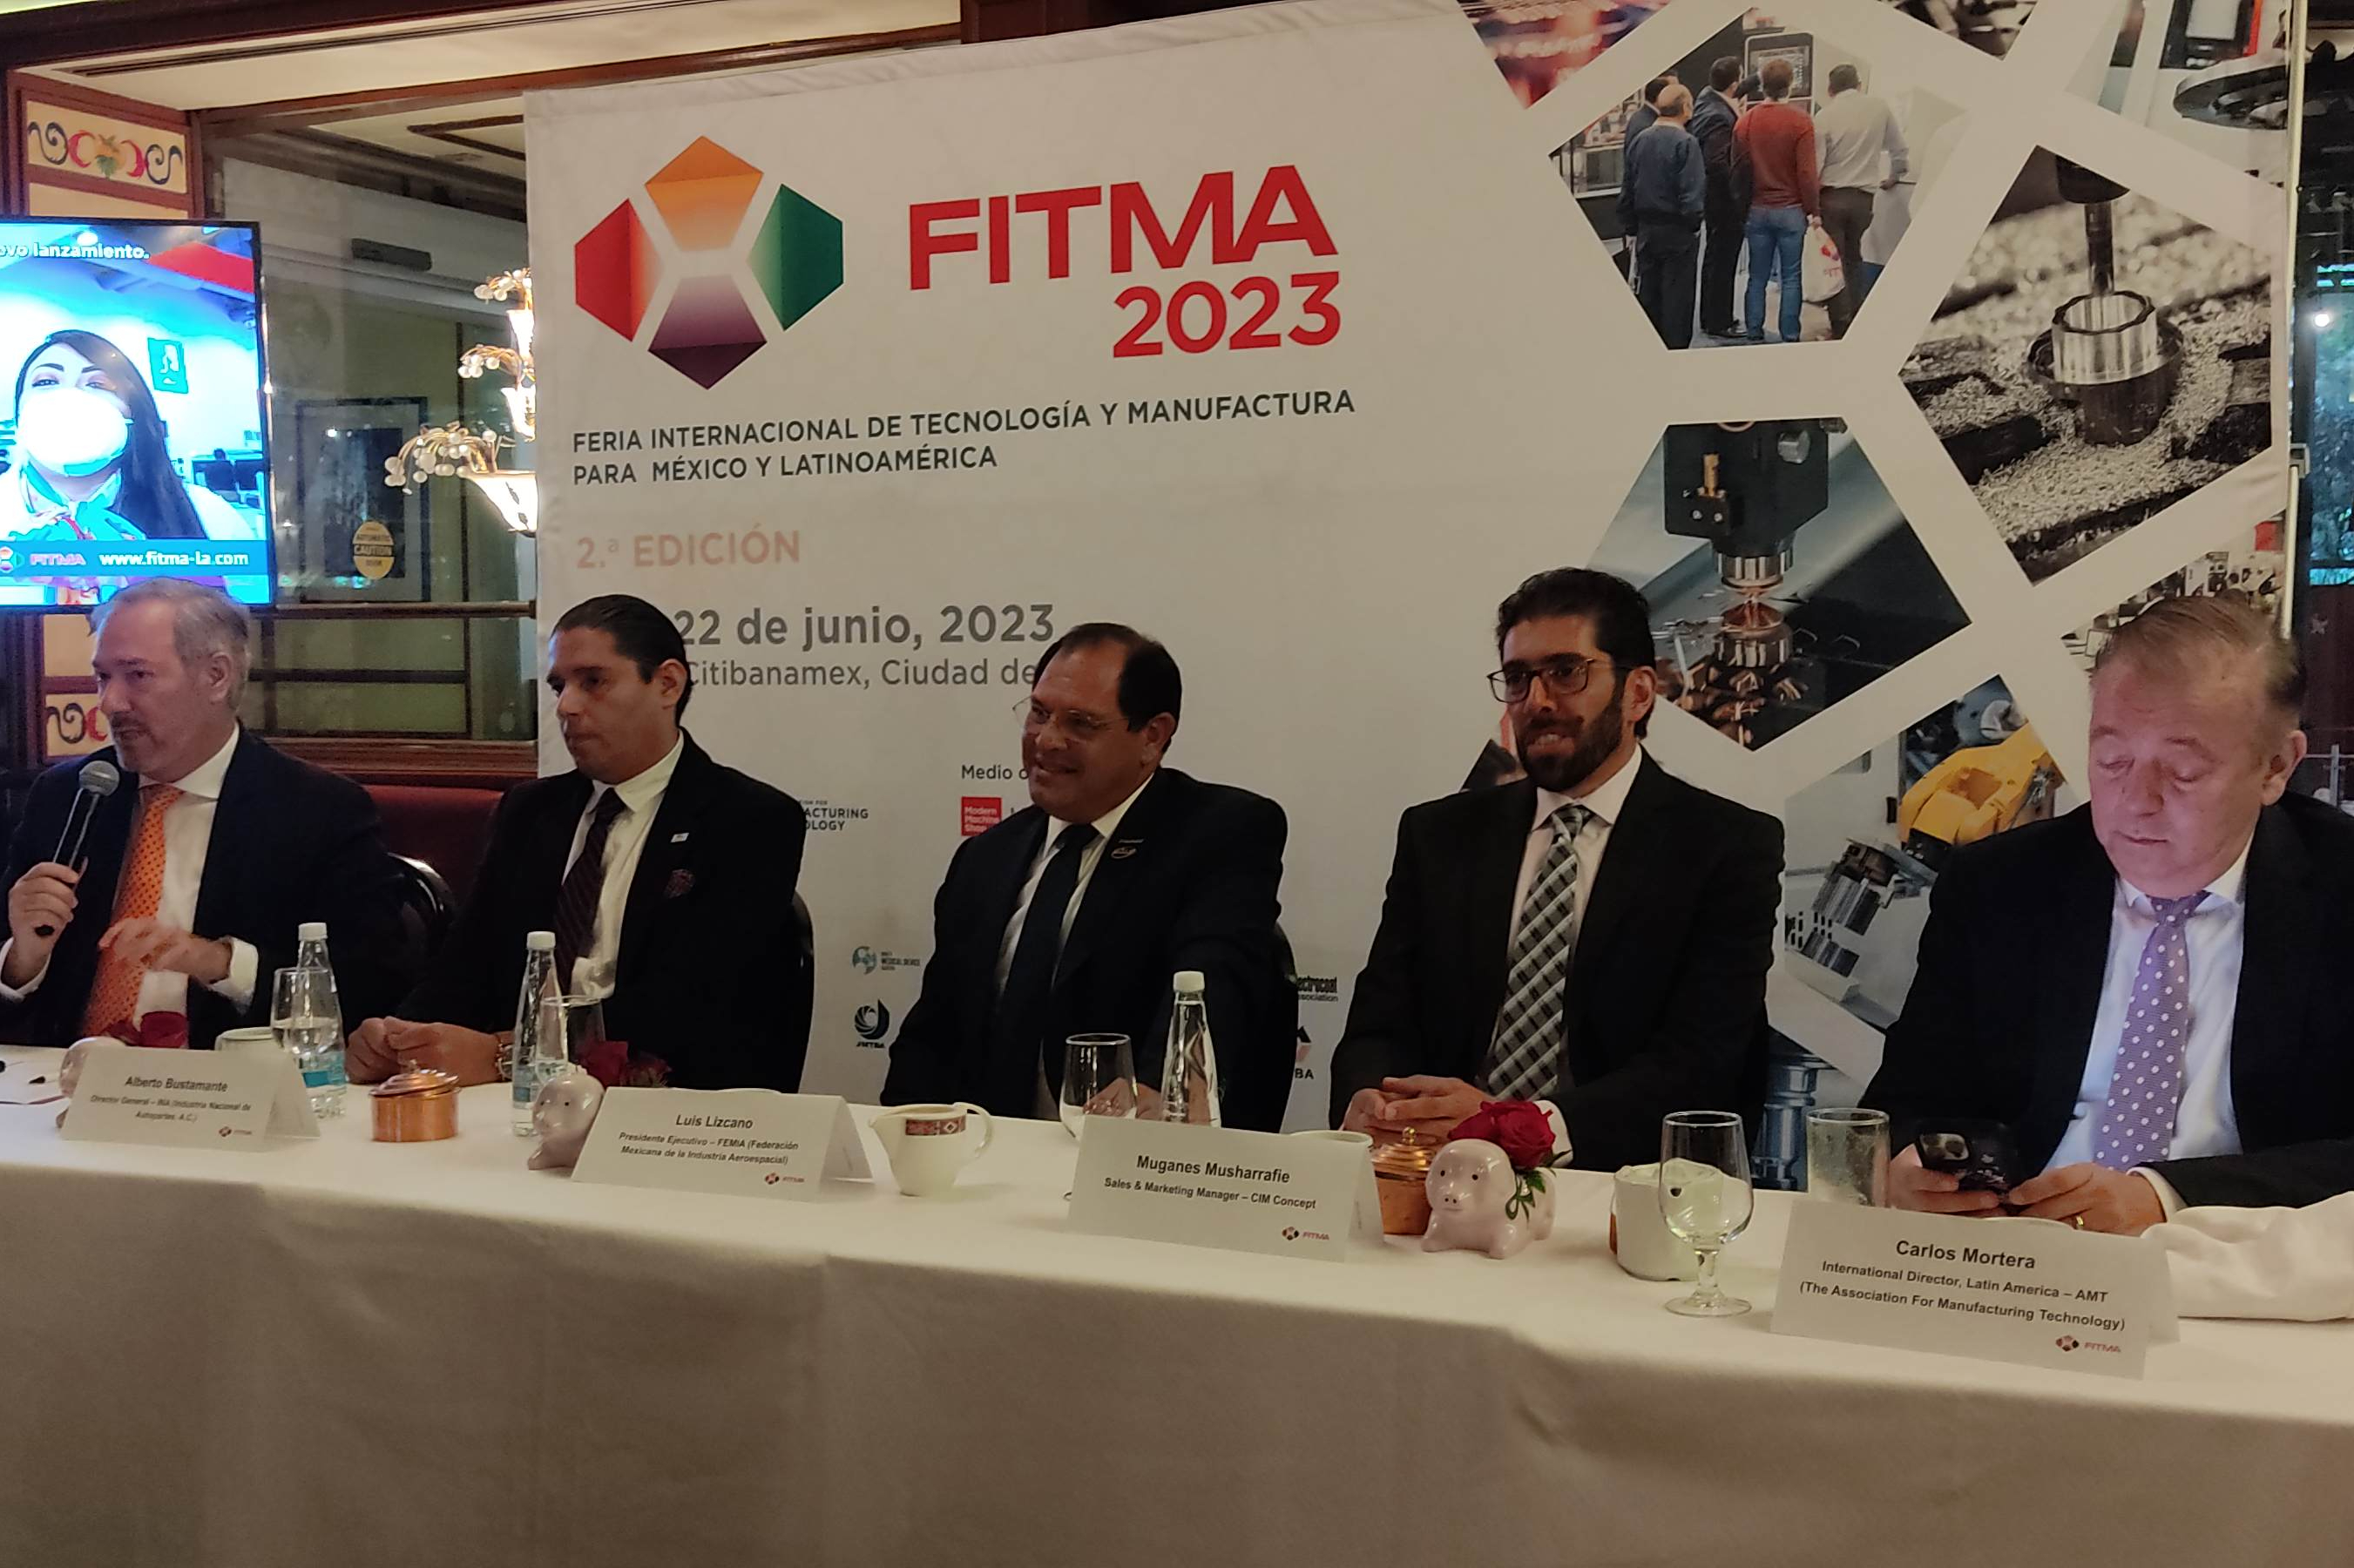 FITMA 2023 presentará un piso de exposición de alta calidad, capacitación técnica y grandes experiencias de networking.